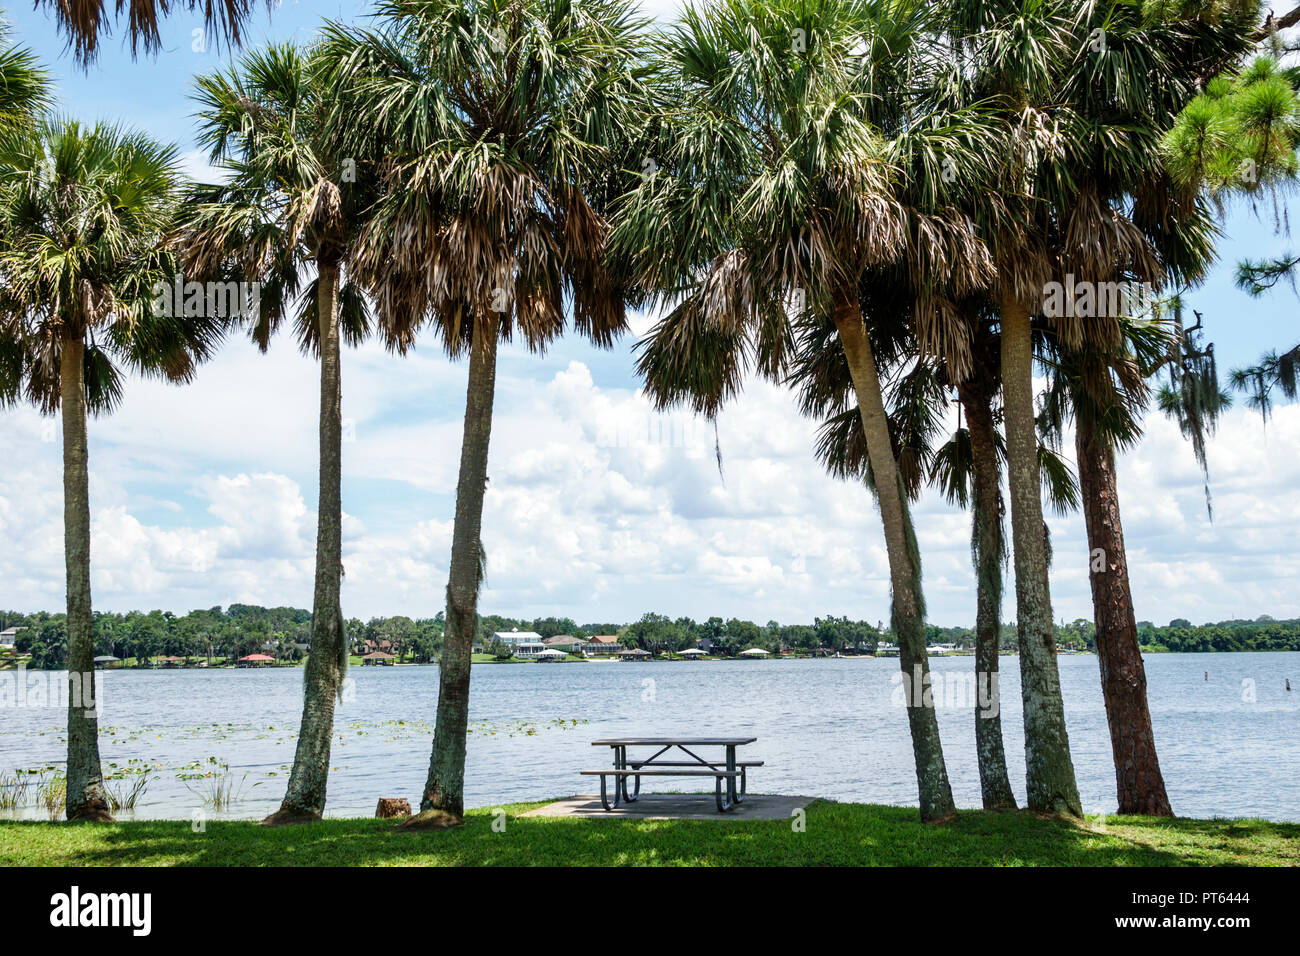 Floride,Lake Placid,Lake June-in-Winter,H. L. Bishop Park, table de pique-nique, palmiers sabaux, FL180731241 Banque D'Images